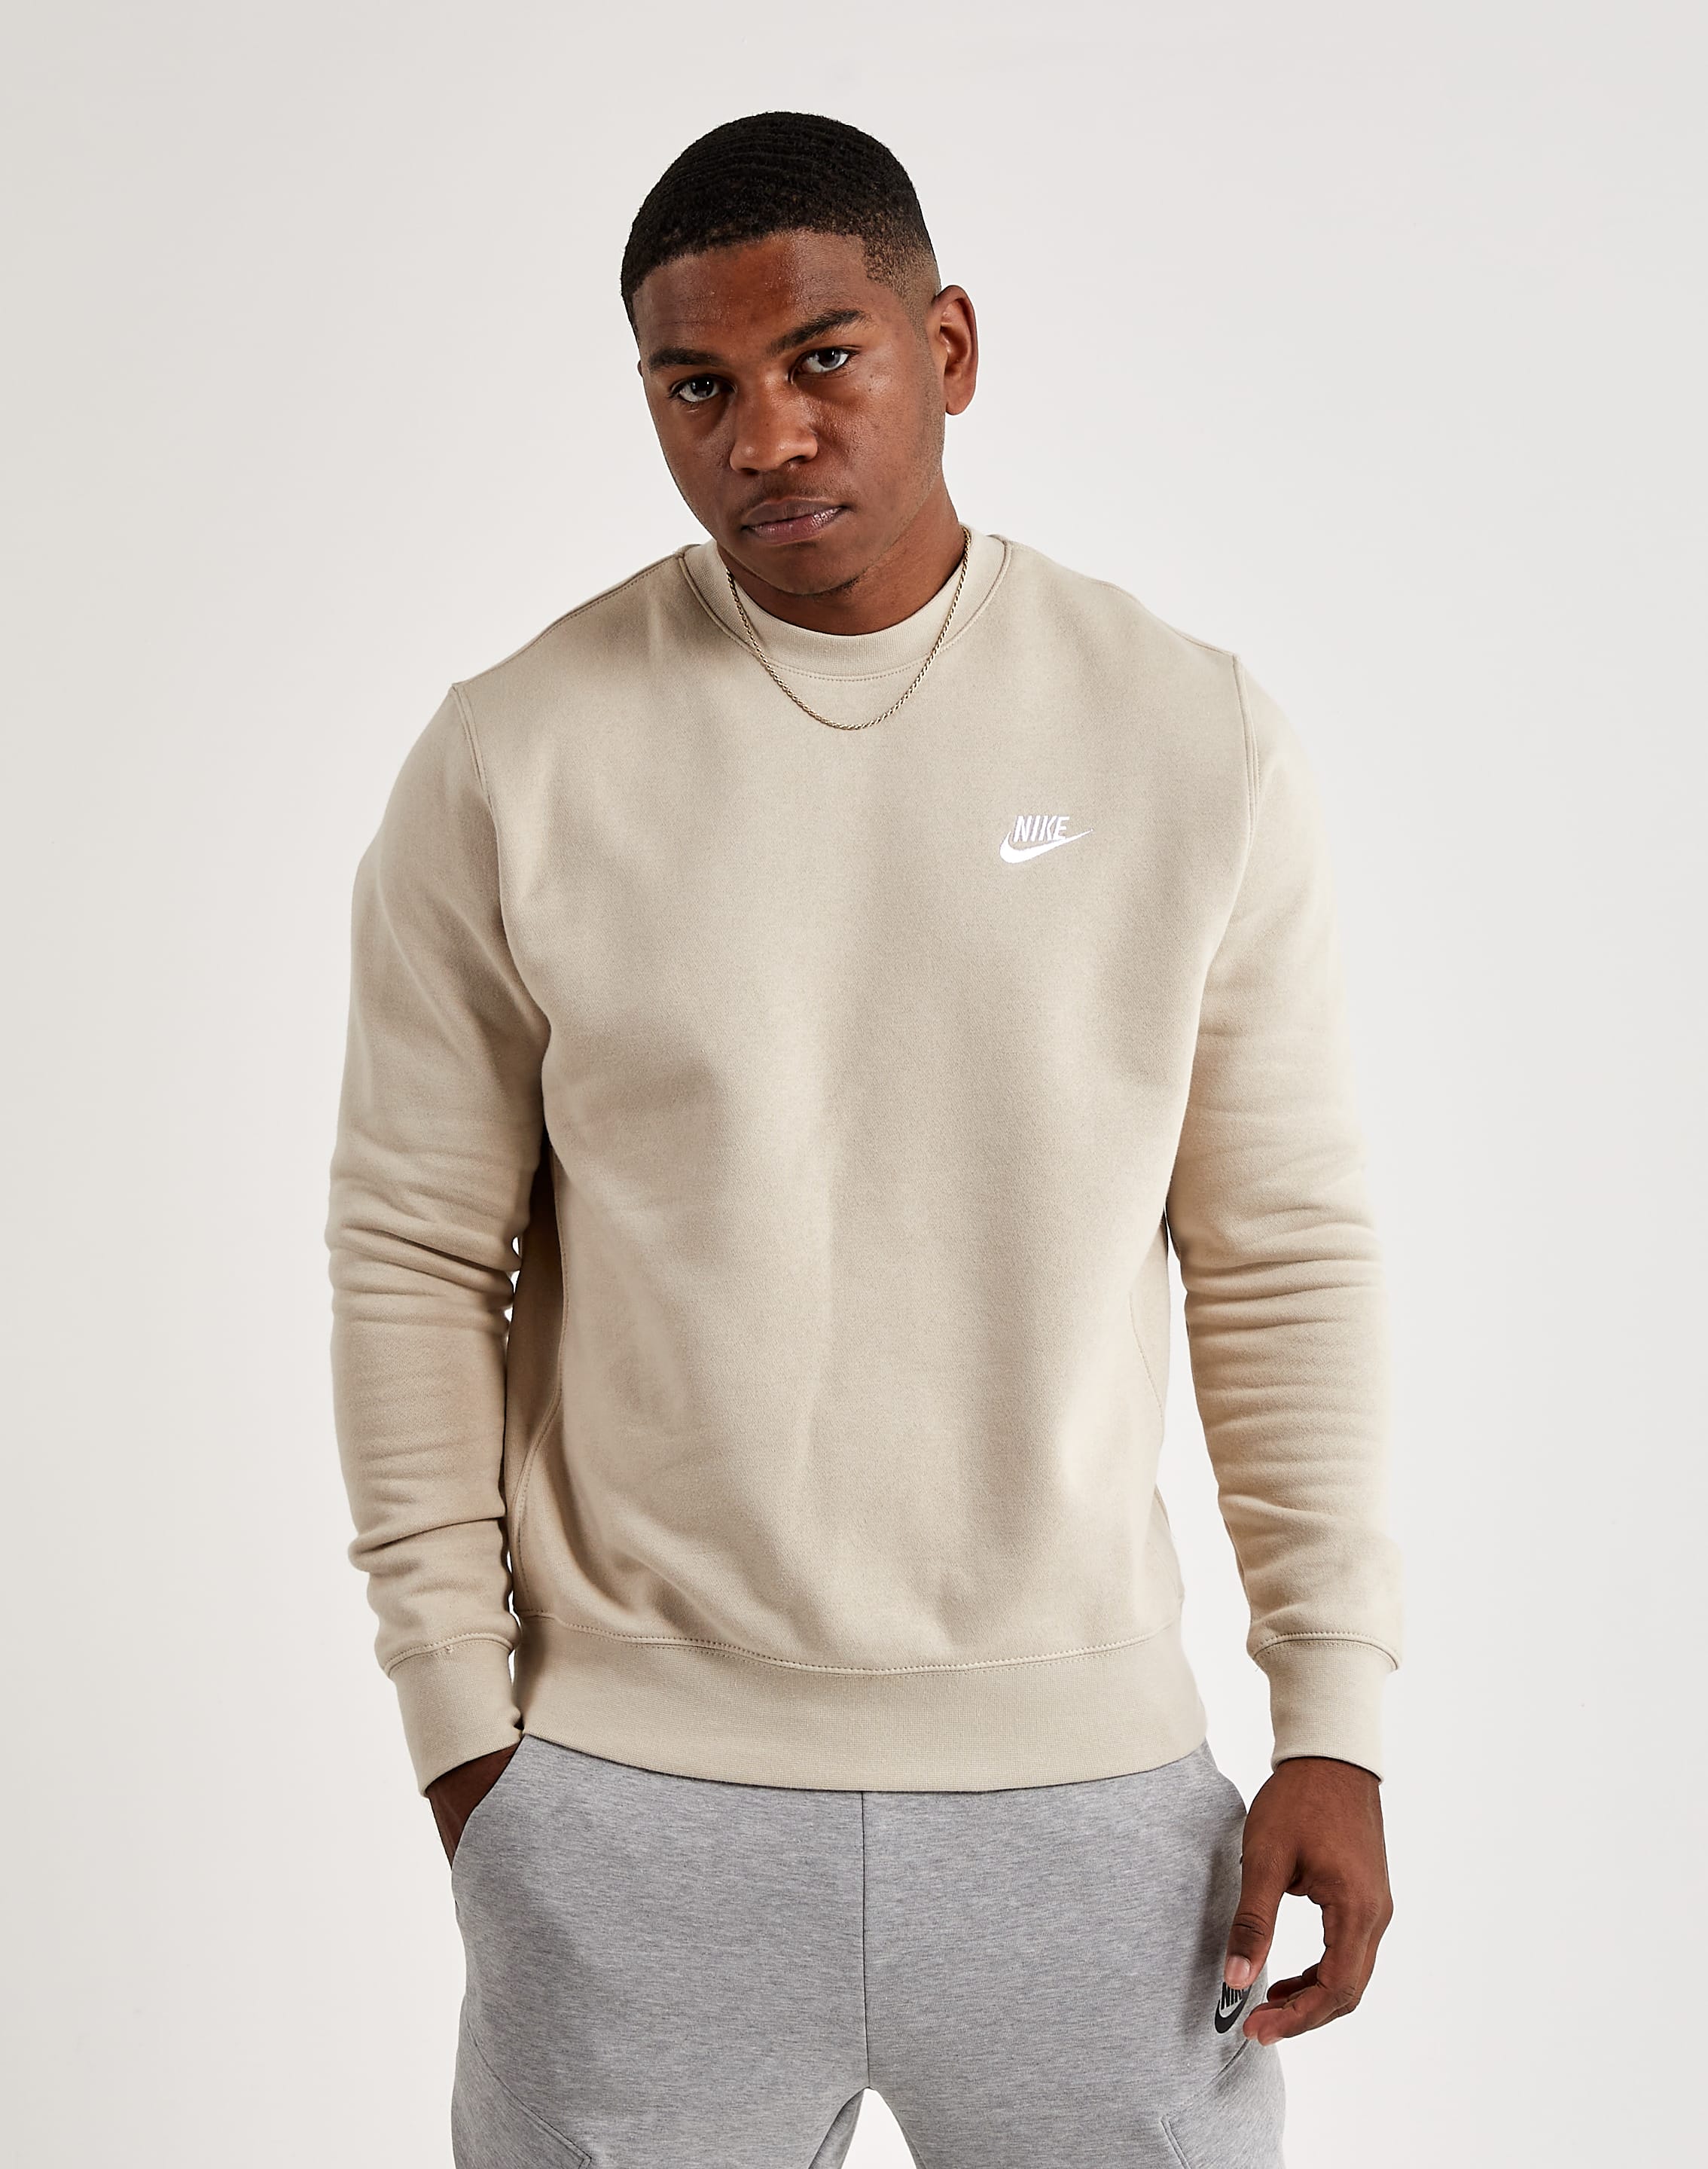 Nike Crewneck Sweatshirt – DTLR